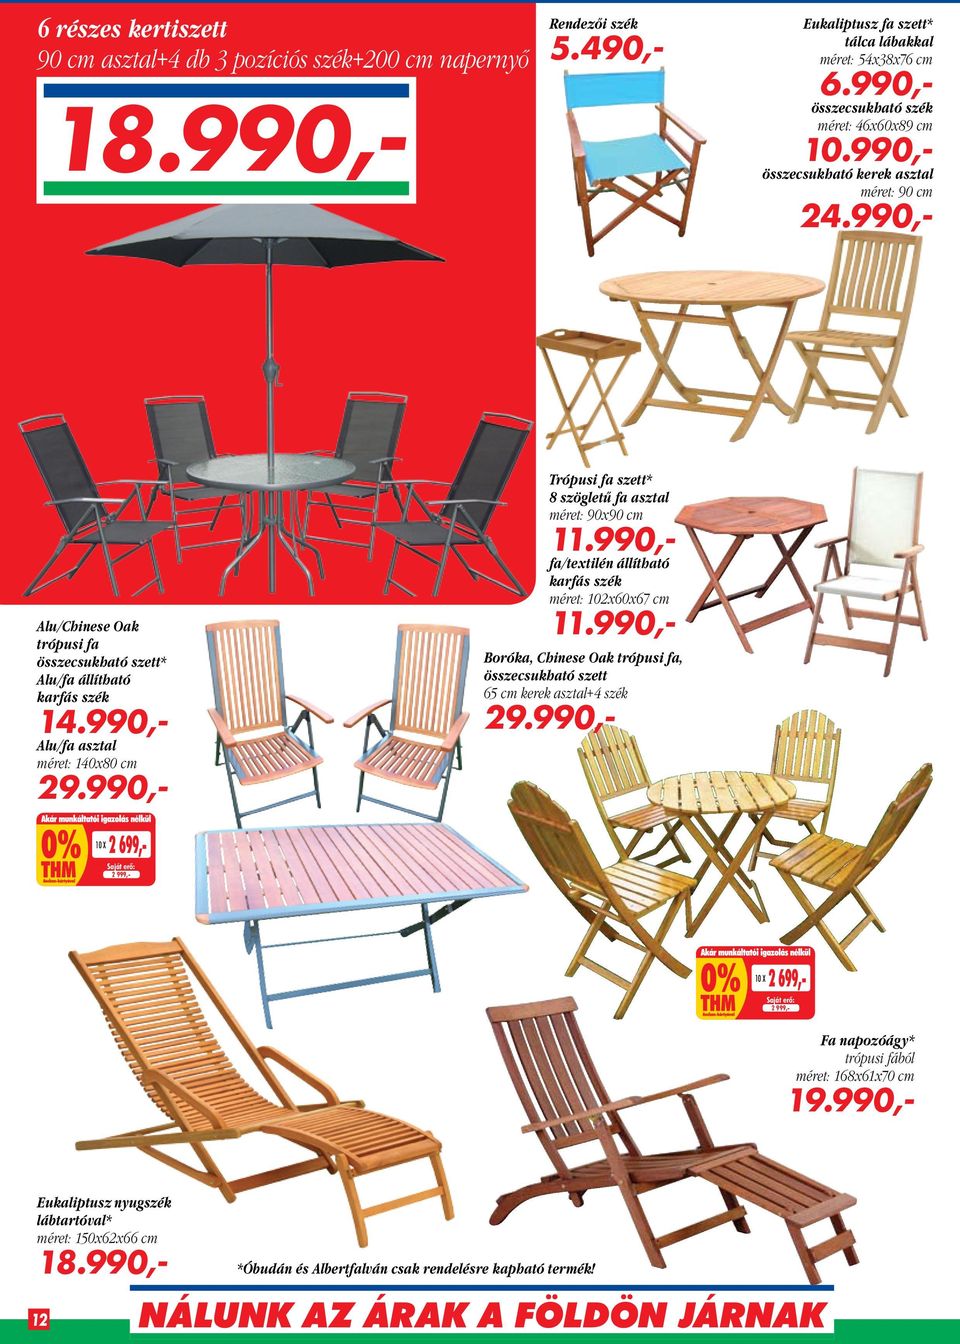 990,- Alu/fa asztal méret: 140x80 cm 29.990,- Trópusi fa szett* 8 szögletű fa asztal méret: 90x90 cm 11.990,- fa/textilén állítható karfás szék méret: 102x60x67 cm 11.